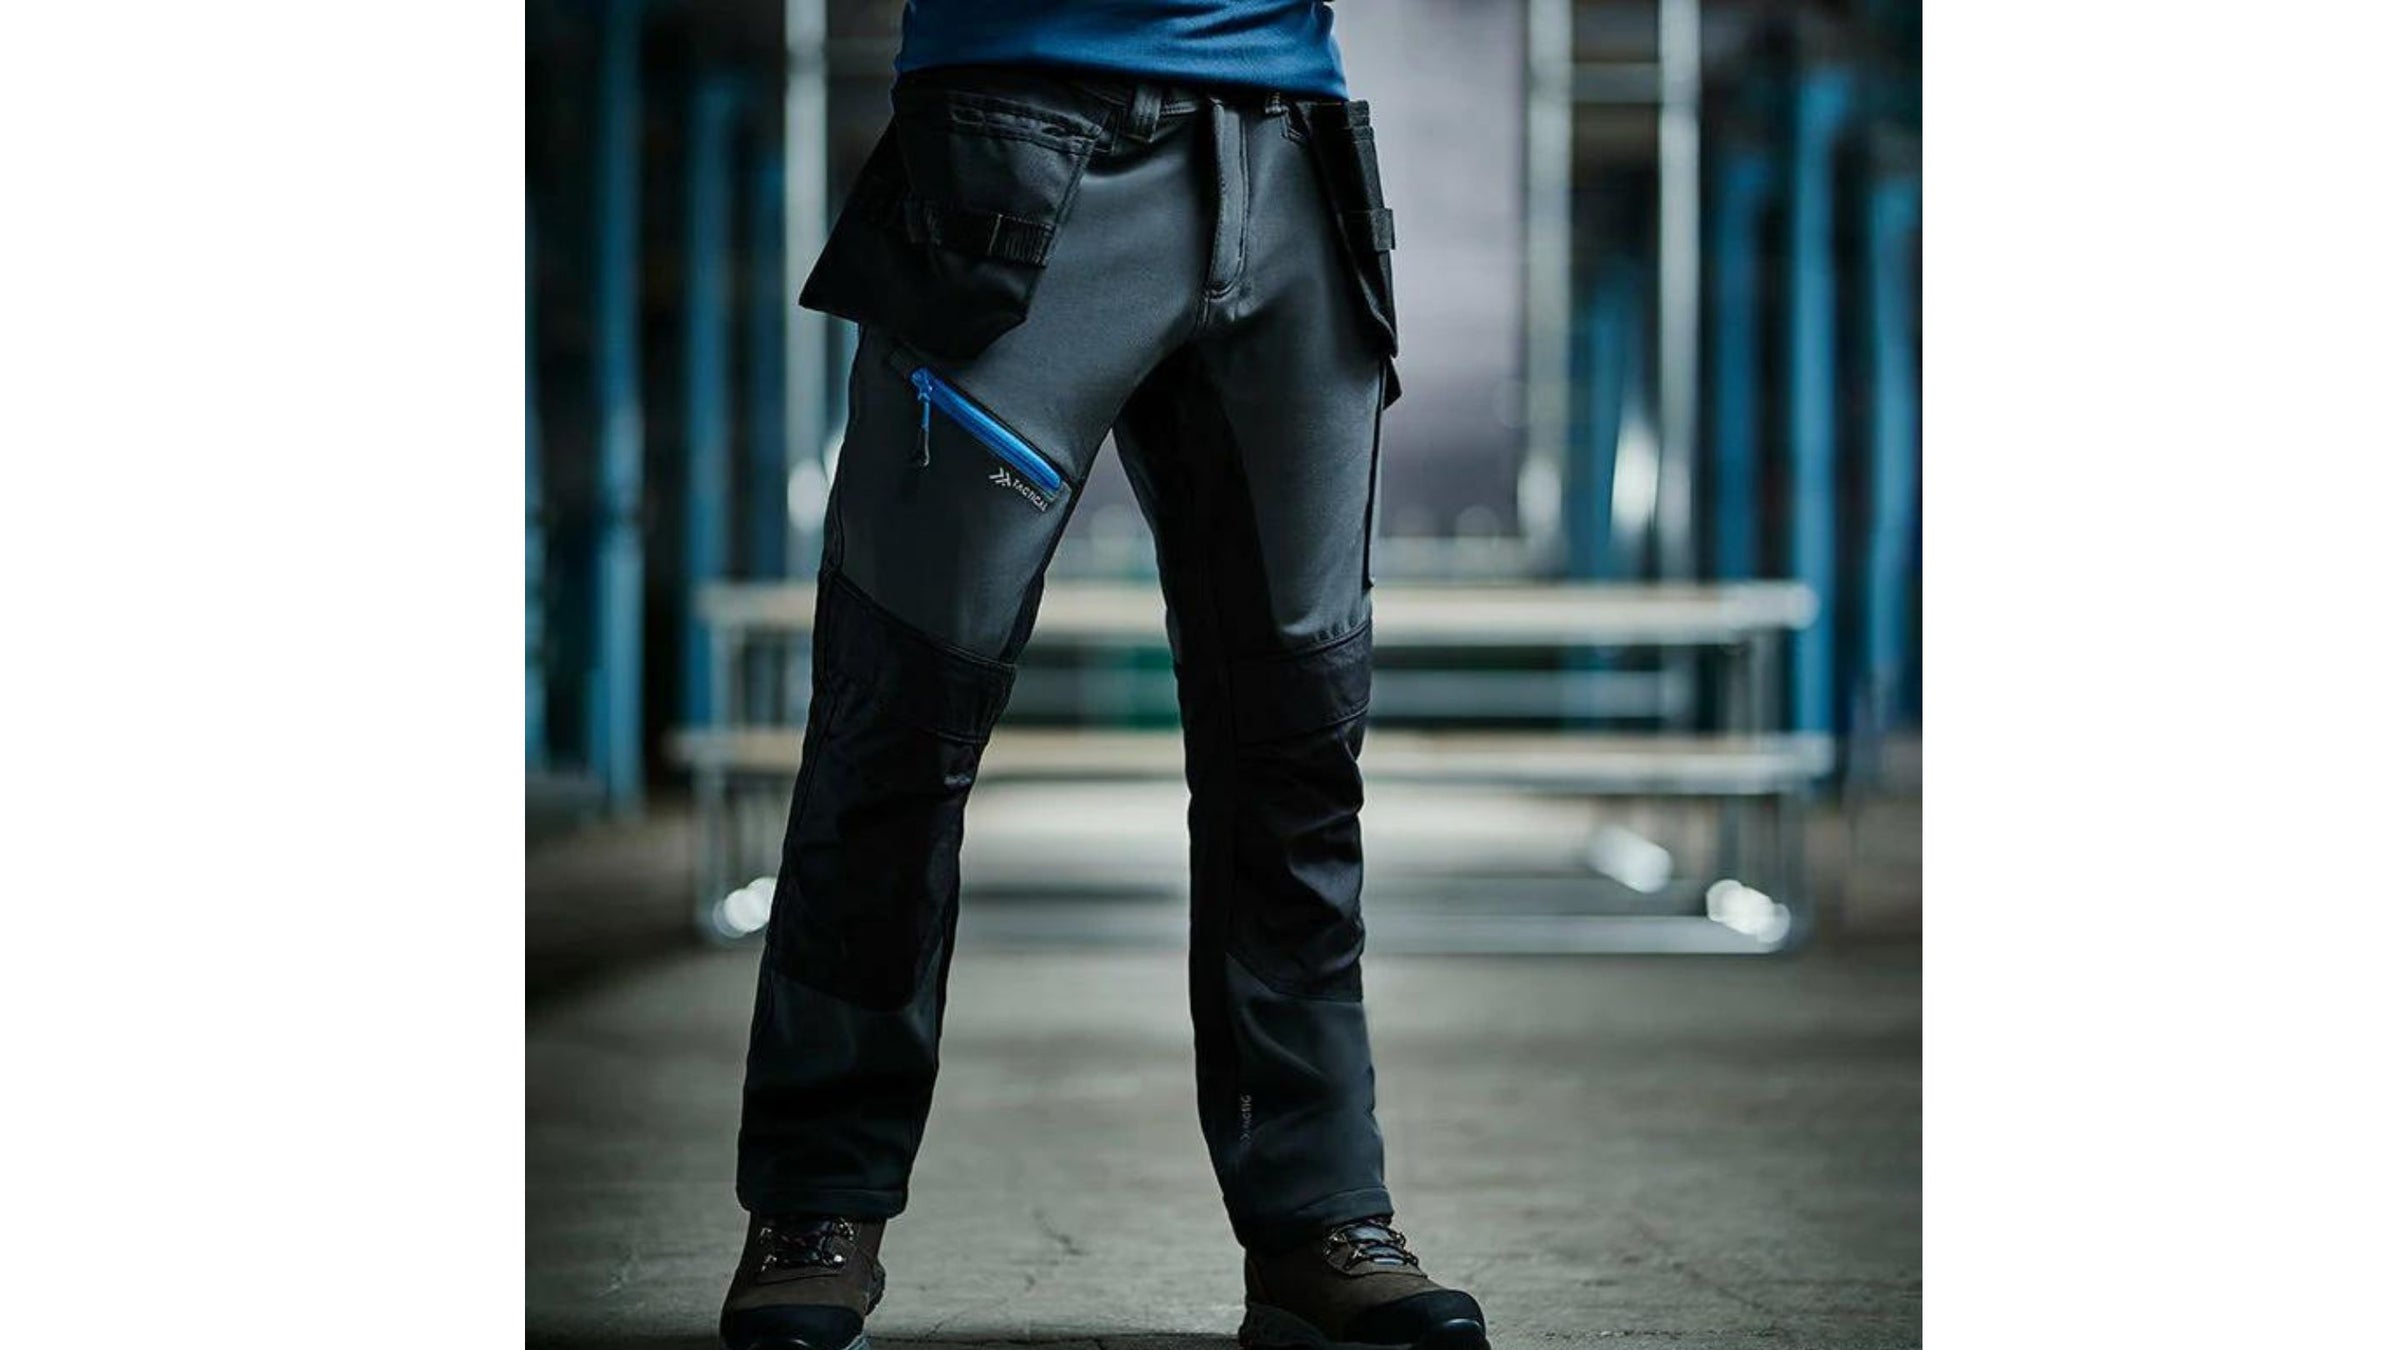 Summer Men's Tactical Combat Pants Lightweight Waterproof Work Cargo  Trousers